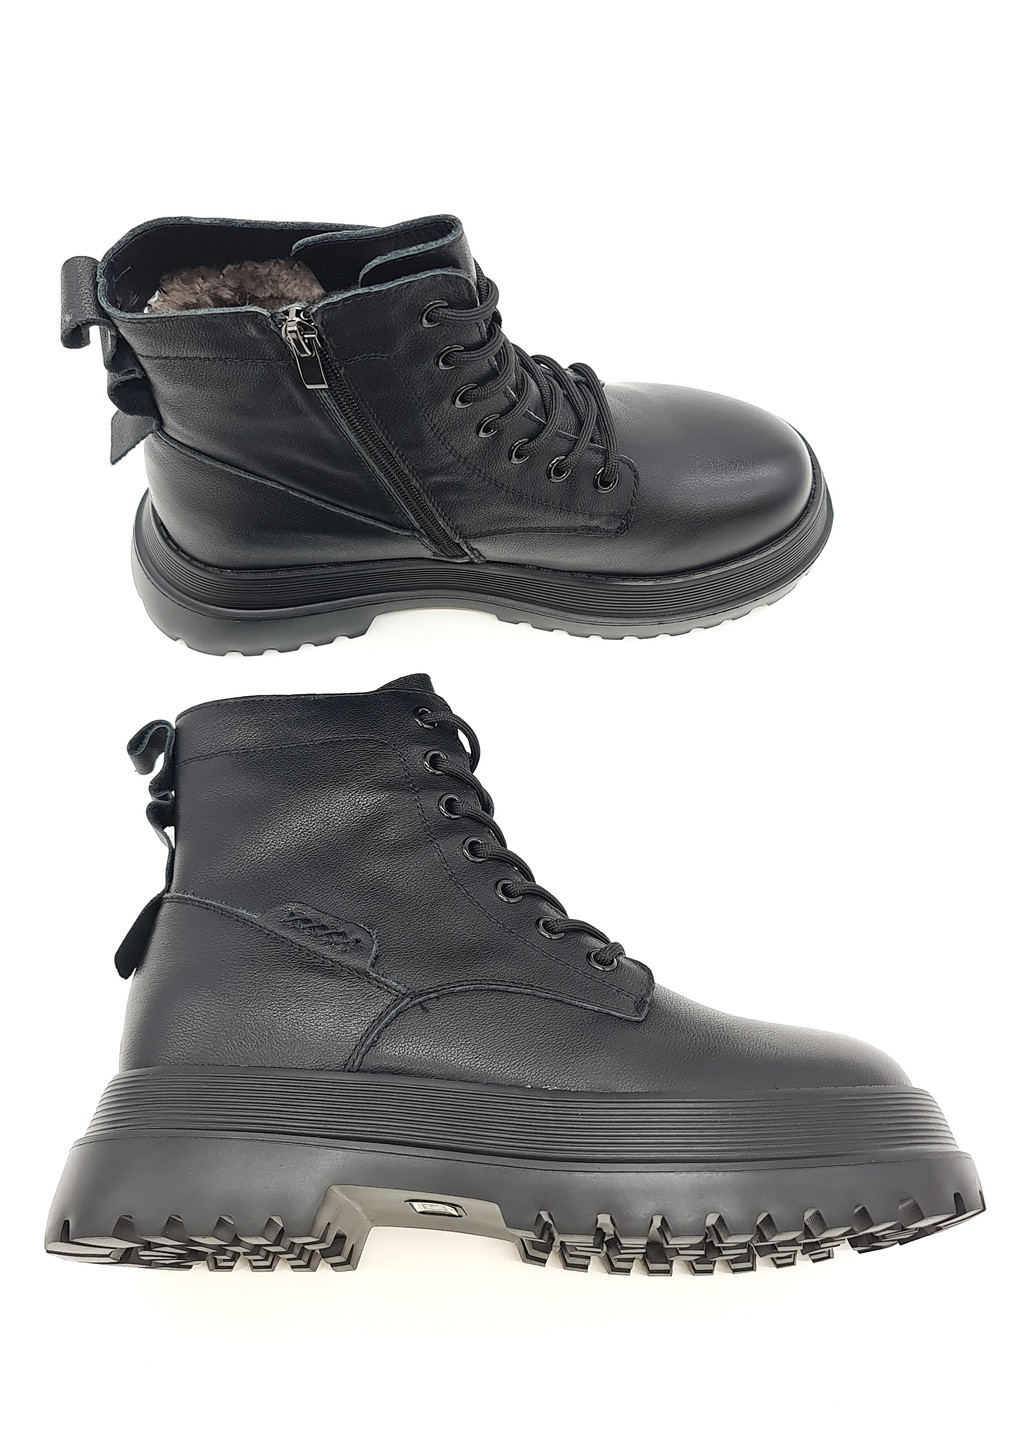 Осенние женские ботинки на овчине черные кожаные bv-15-9 23 см (р) Boss Victori